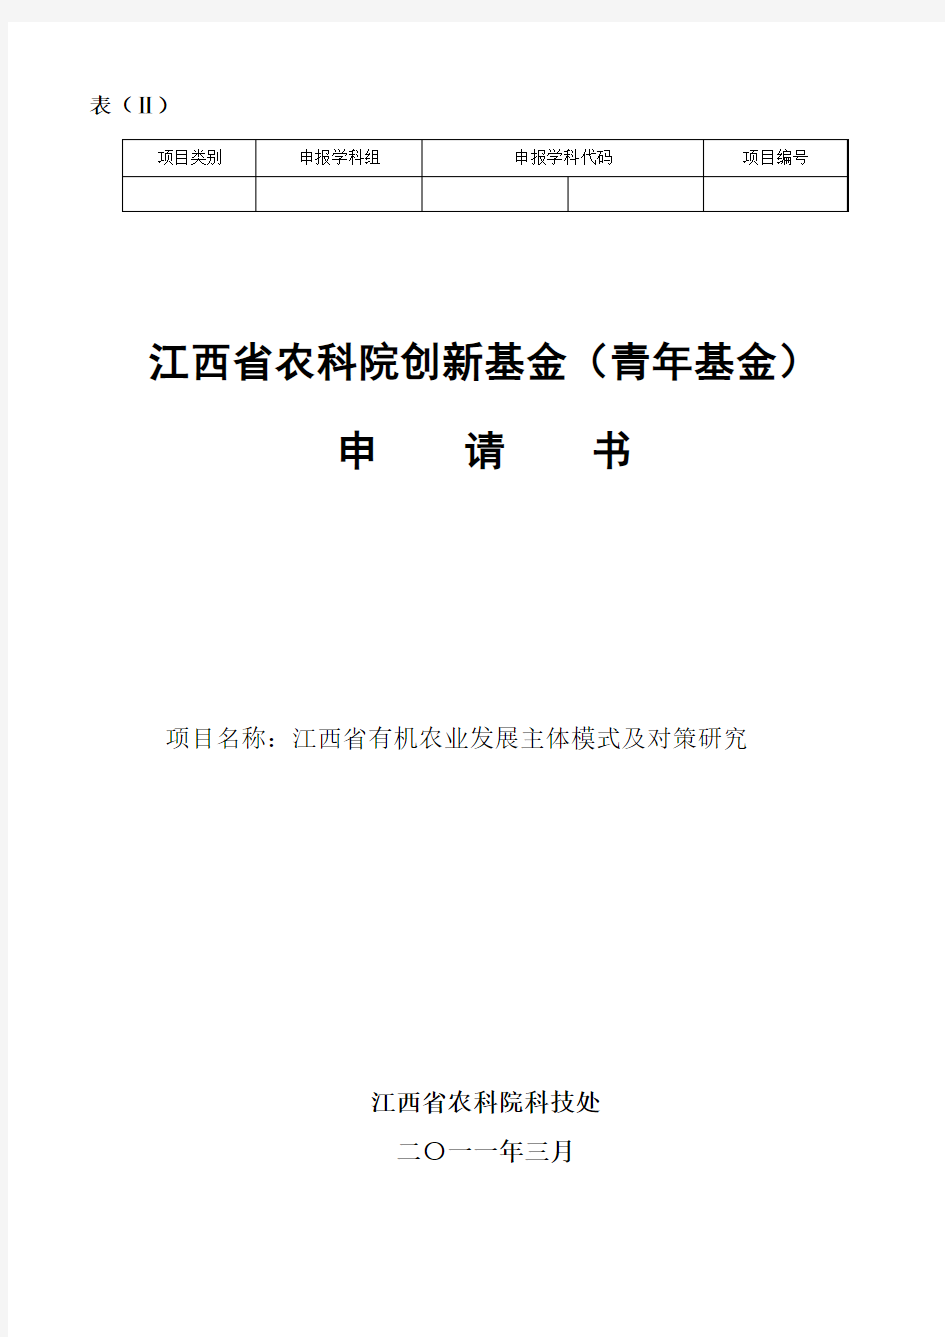 【2009版】江西省自然科学基金申请书(表二)